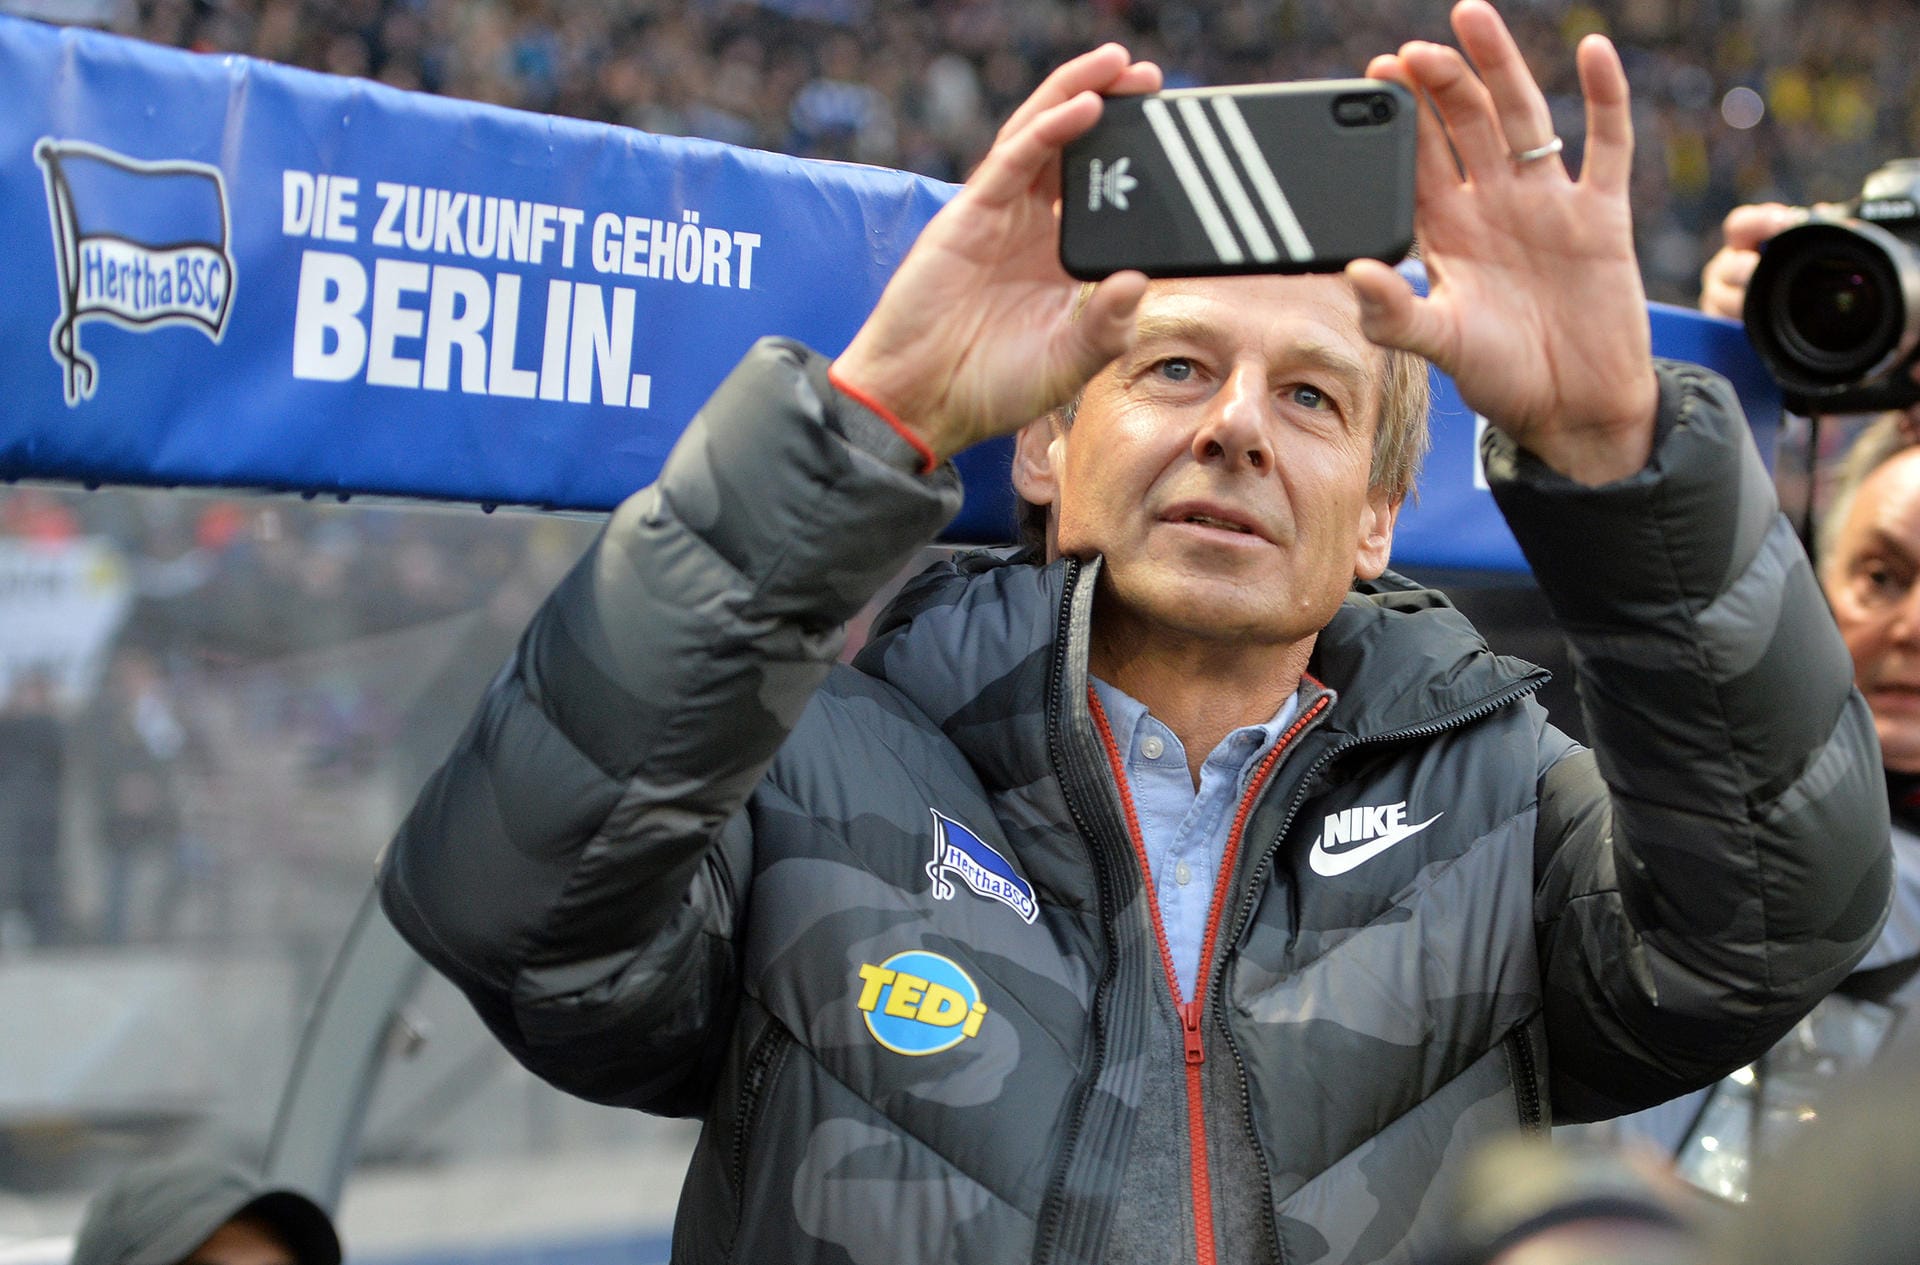 13. Spieltag: Jürgen Klinsmann ist zurück in der Bundesliga. Nachdem die Hertha sich von Ex-Trainer Ante Covic getrennt hatte, wollte Klinsmann aushelfen und den Trainerjob bis zum Saisonende übernehmen. Schon sein erster Spieltag startete furios: Im Heimspiel gegen den BVB (1:2) holte "Klinsi" sein Handy raus und filmte die Ostkurve vor dem Spiel. Danach postete er das Video auf Twitter.